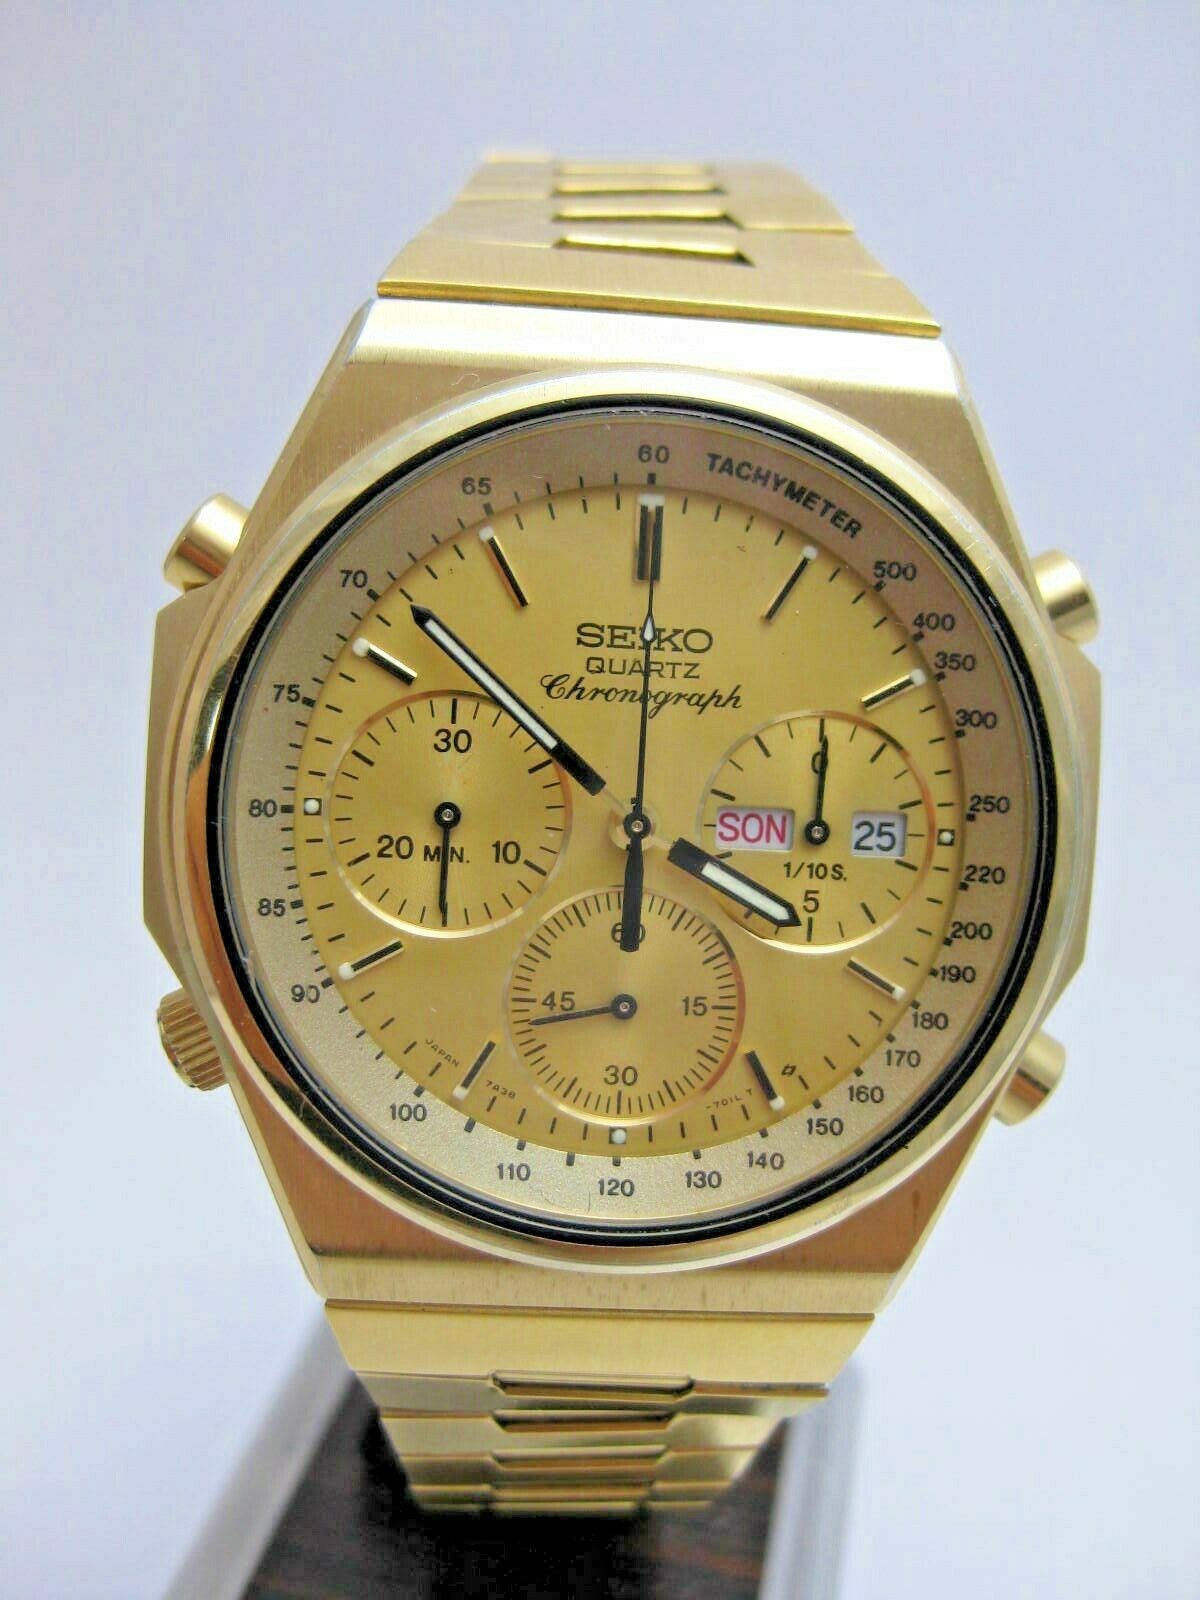 7A38-7000-Gold-eBay(Germany)-July2021-1.jpg